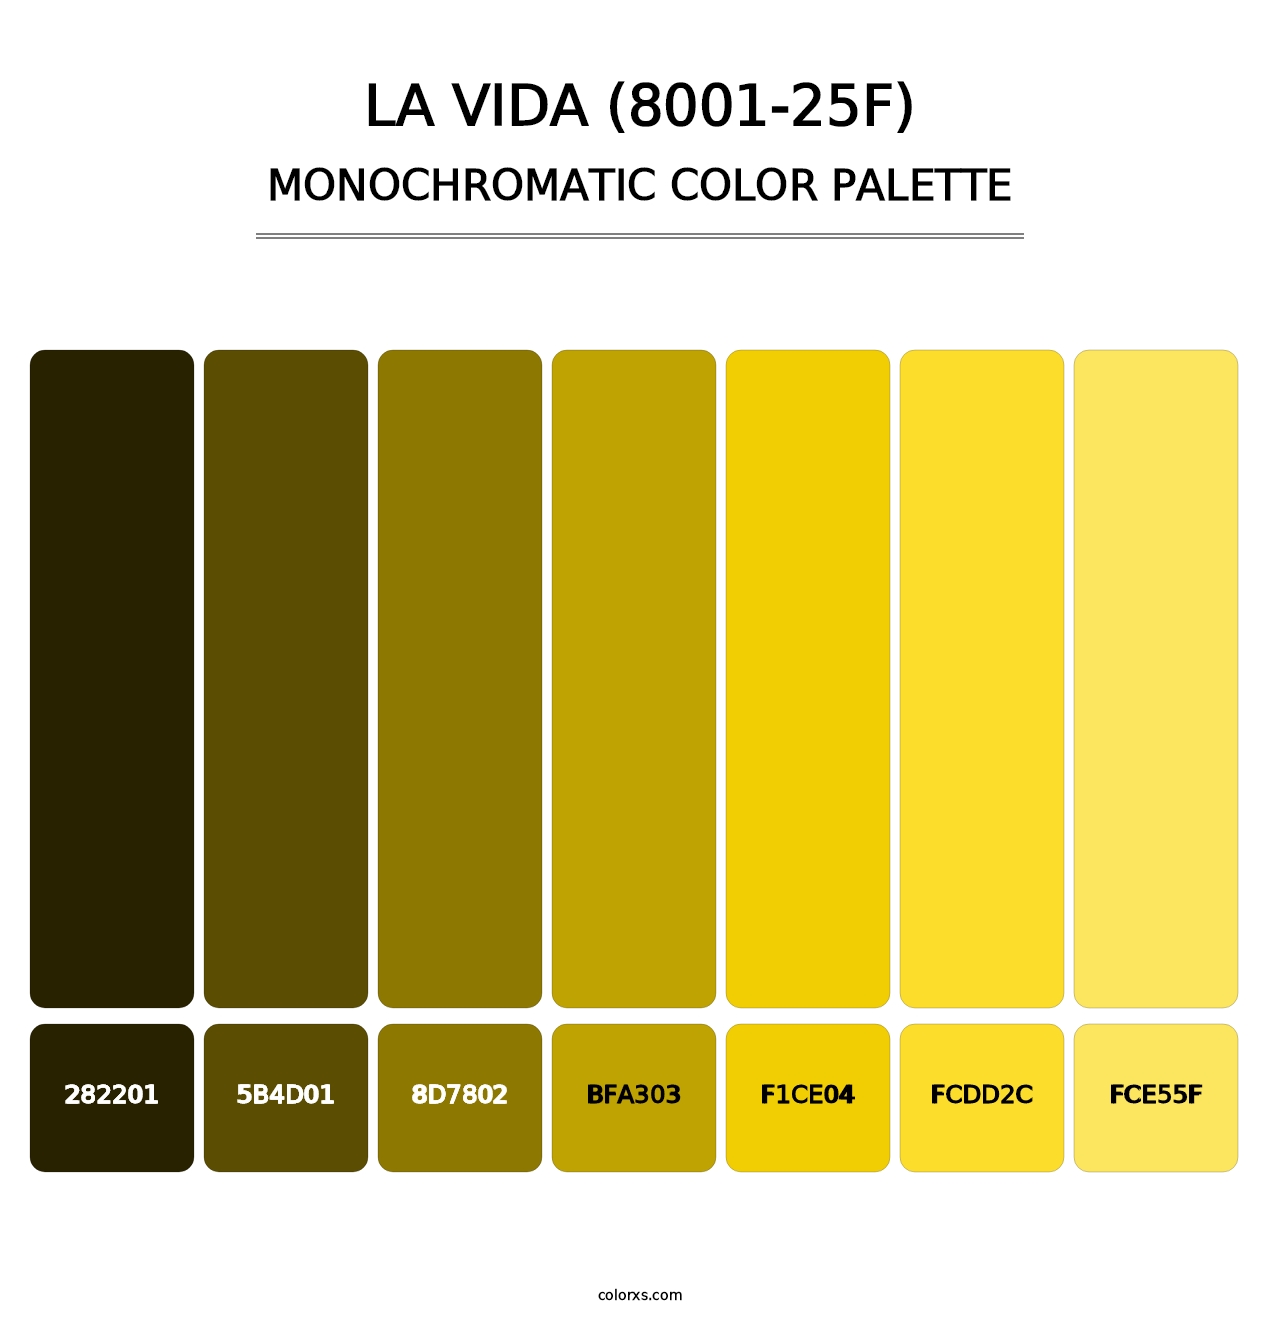 La Vida (8001-25F) - Monochromatic Color Palette